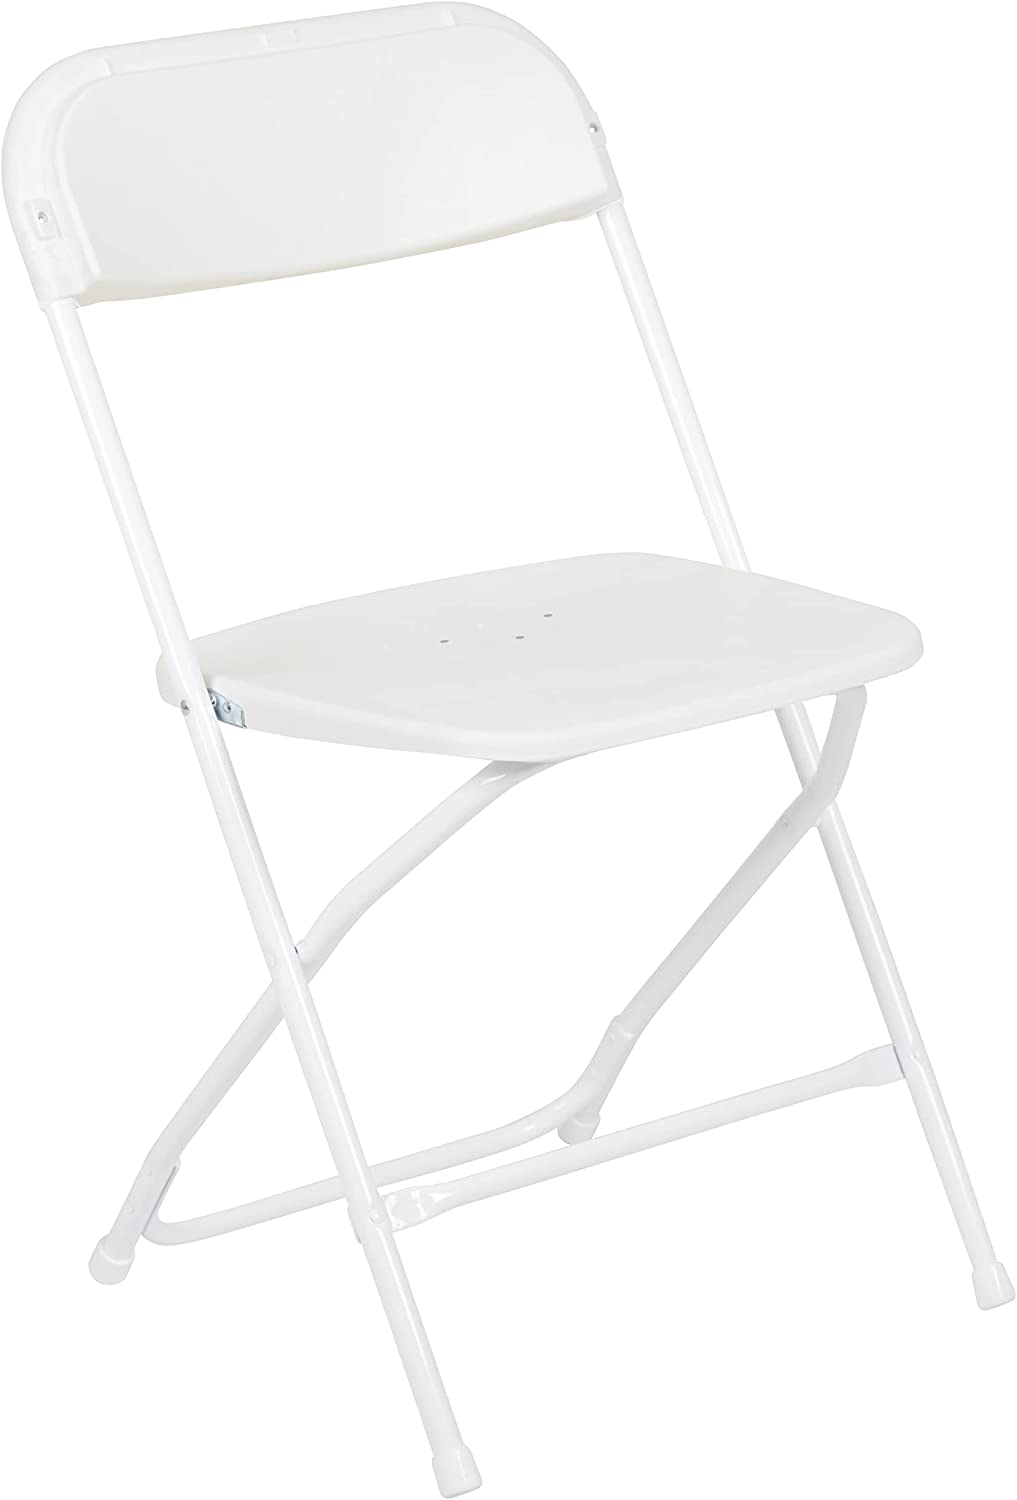 Flash Furniture Hercules√É¬¢√¢‚Ç¨≈æ√Ç¬¢ Series Plastic Folding Chair - White - 650LB Weight Capacity Comfortable Event Chair - Lightweight Folding Chair